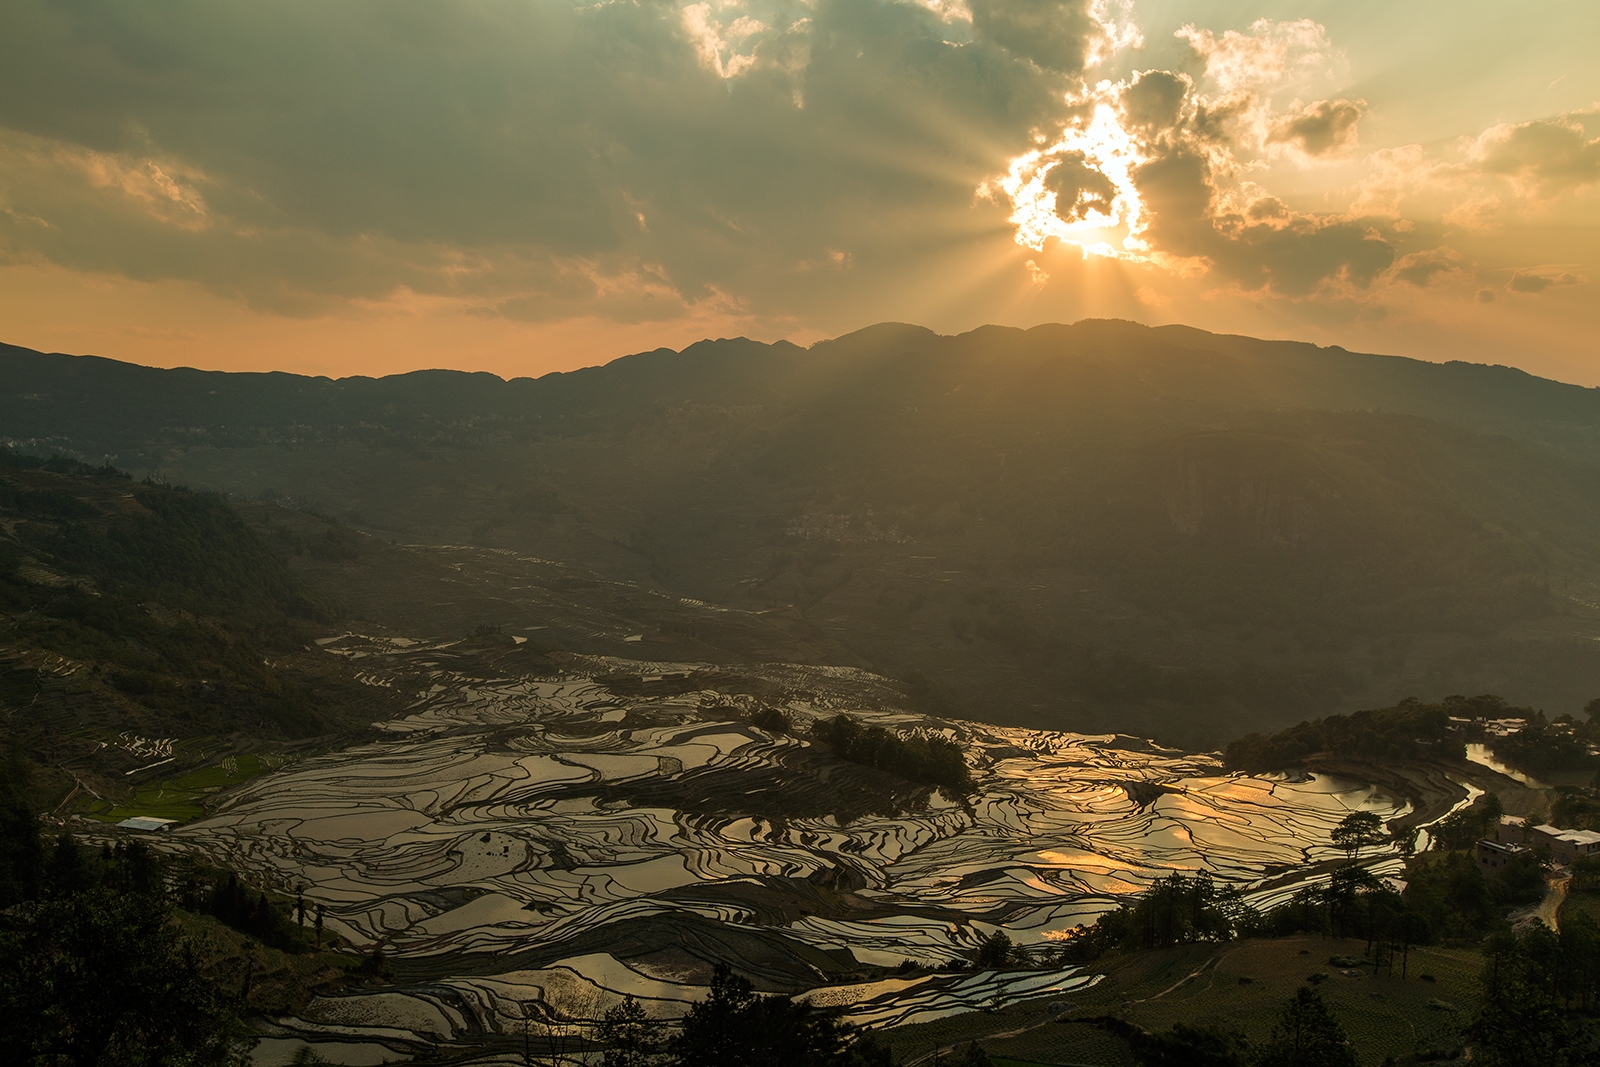 Yuanyang rice terraces - Yunnan, China